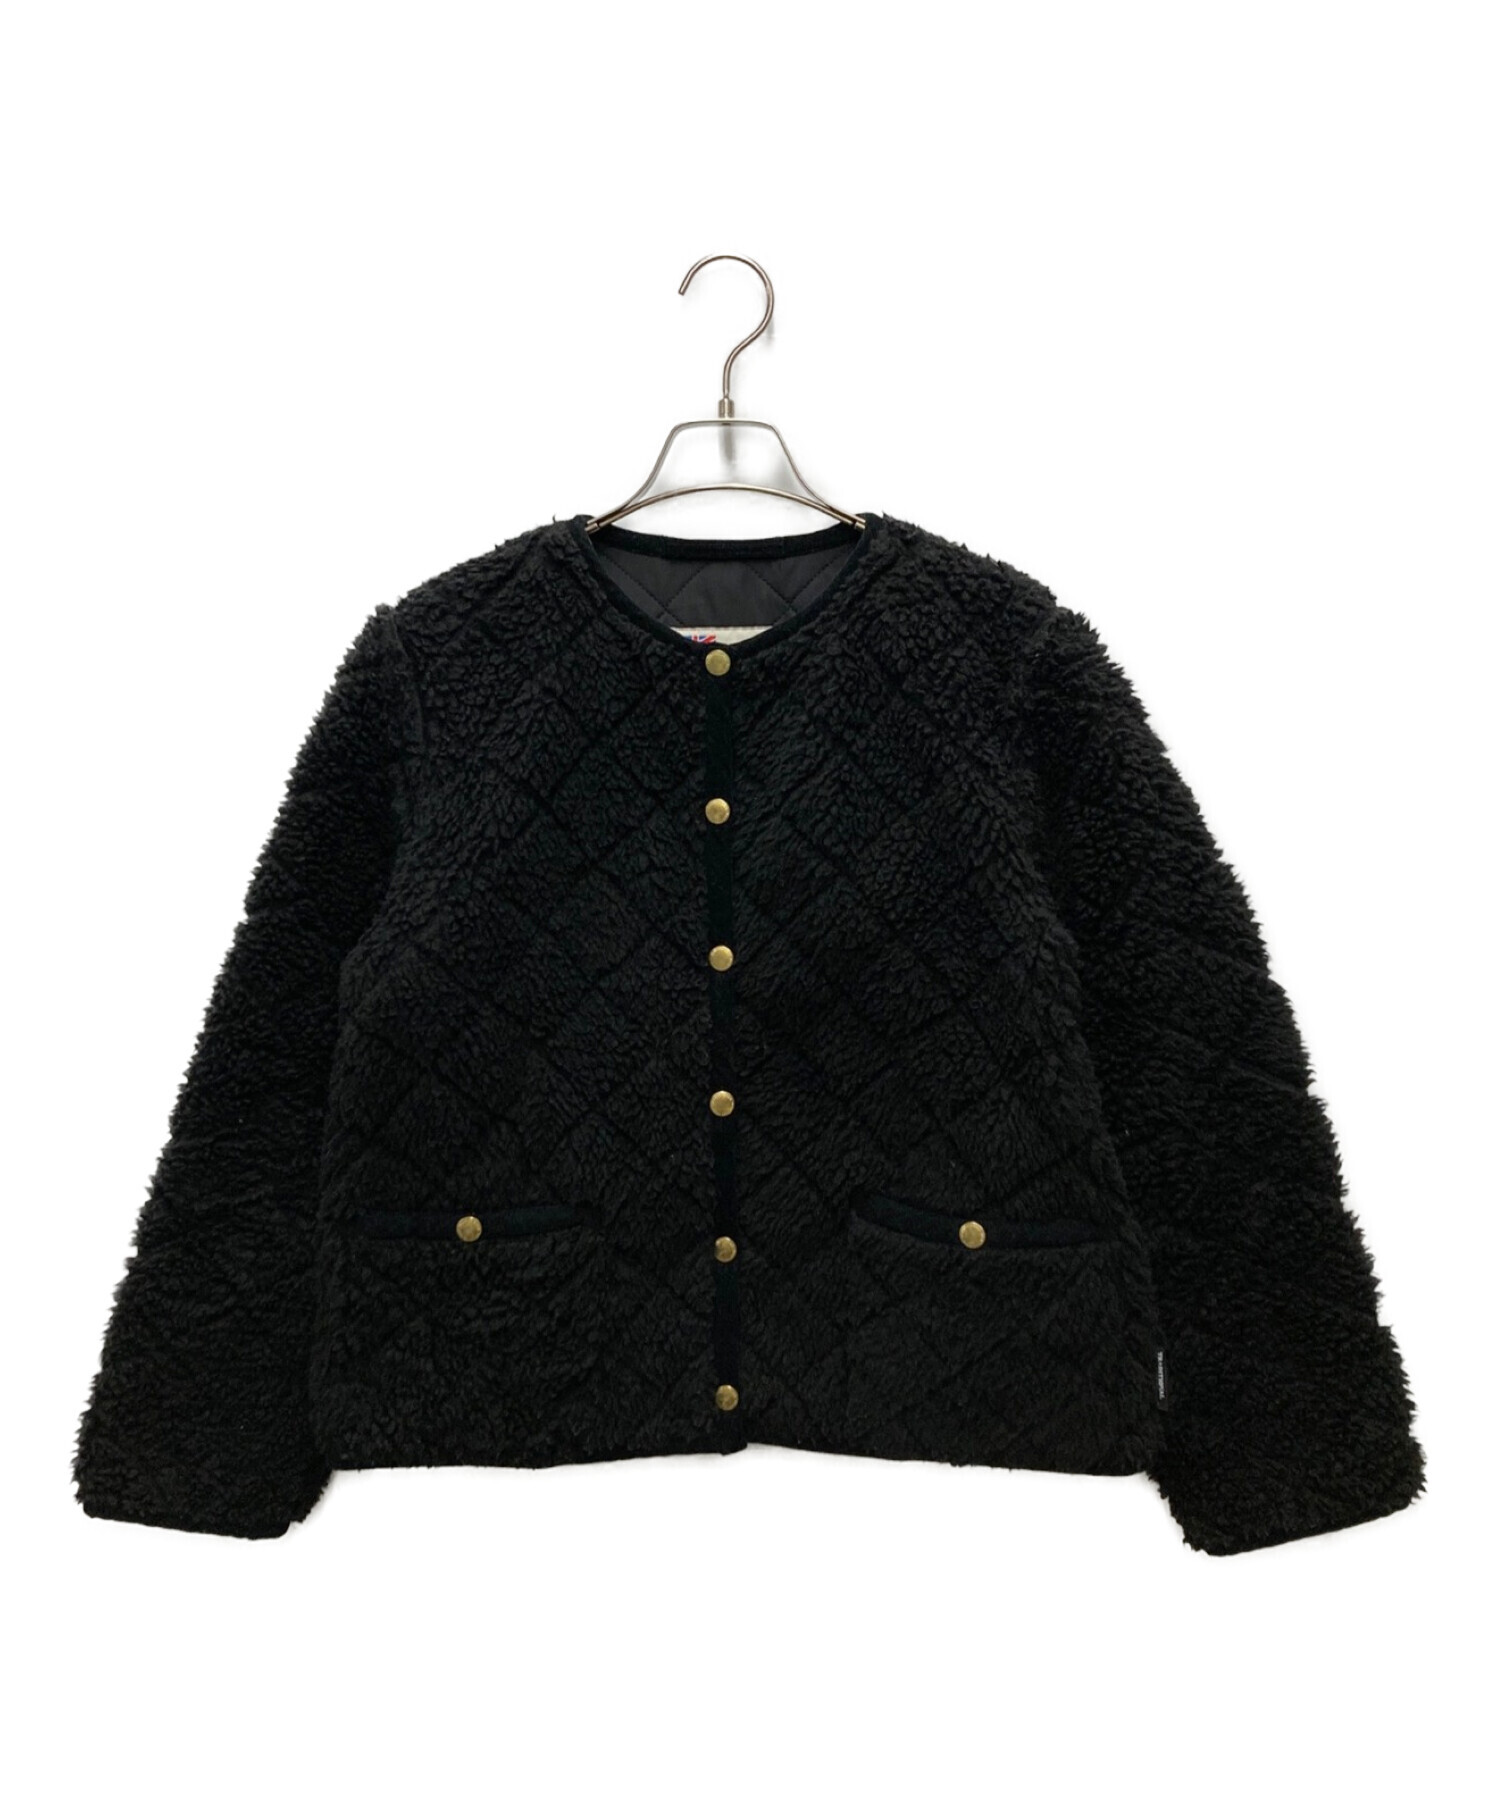 Traditional Weatherwear トラディショナルウェザーウェア ノーカラーボアジャケット ブラック サイズ: